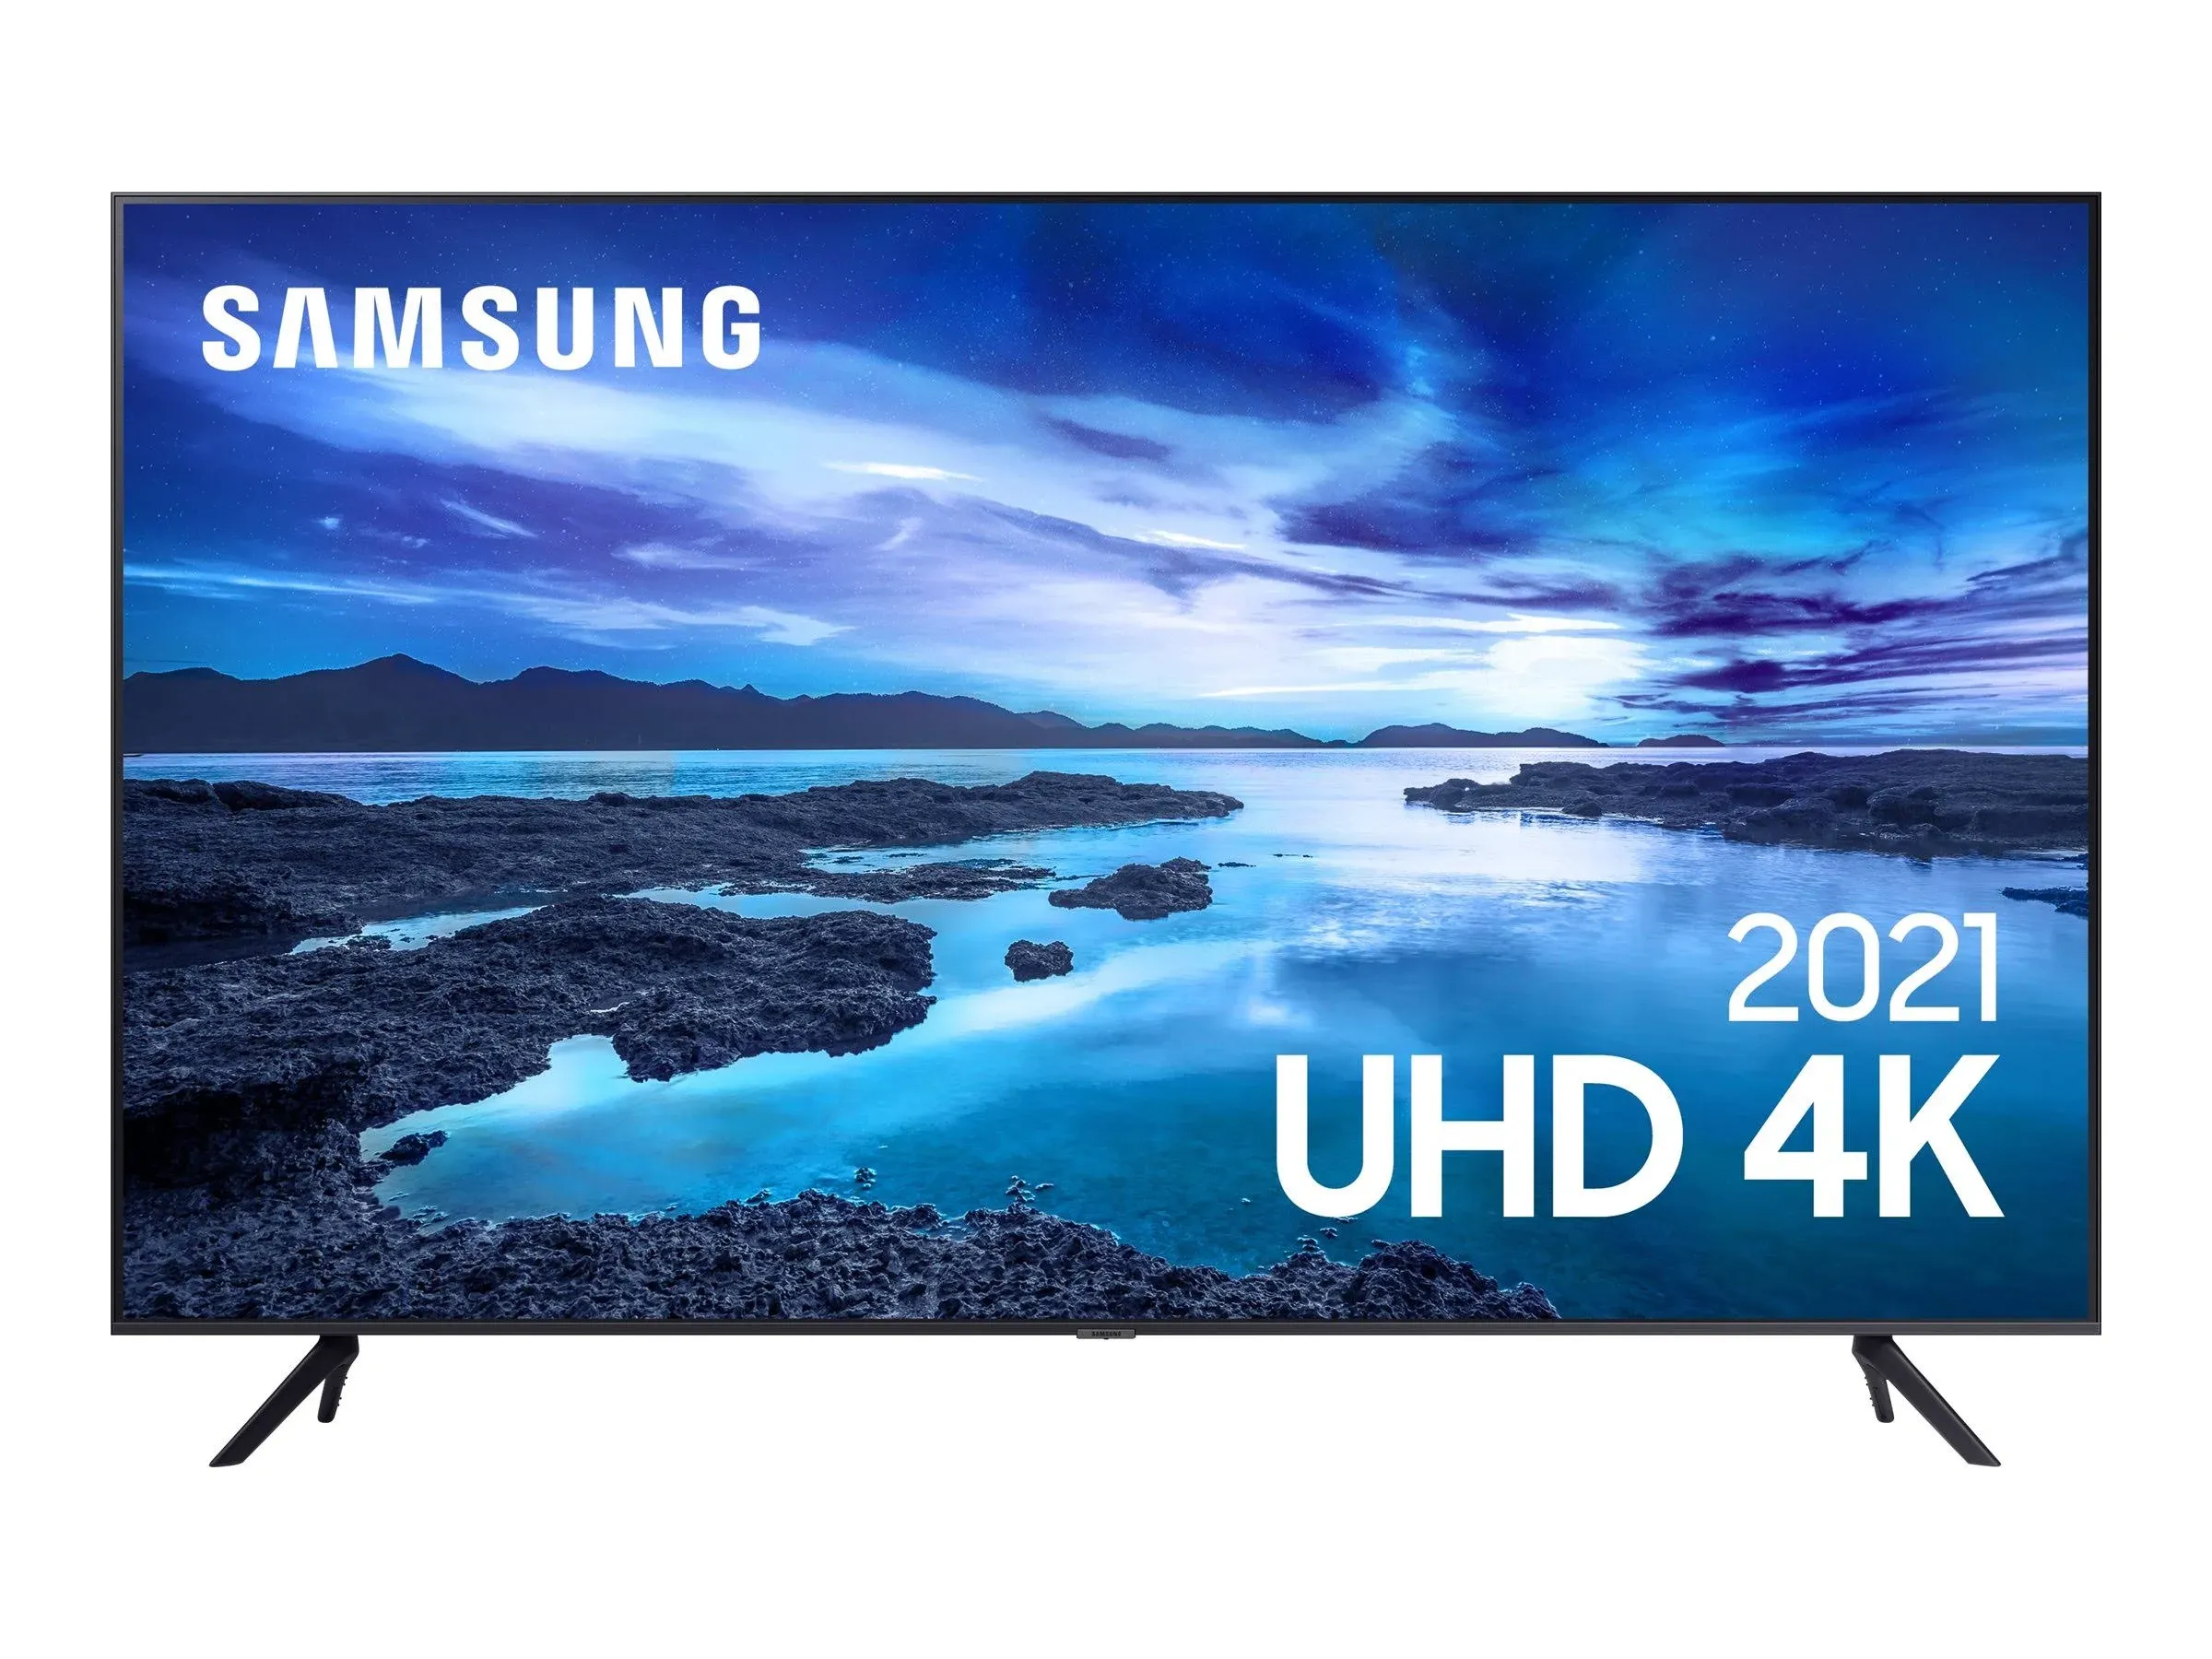 Imagem do produto Samsung Smart Tv 60 Uhd 4K 60au7700